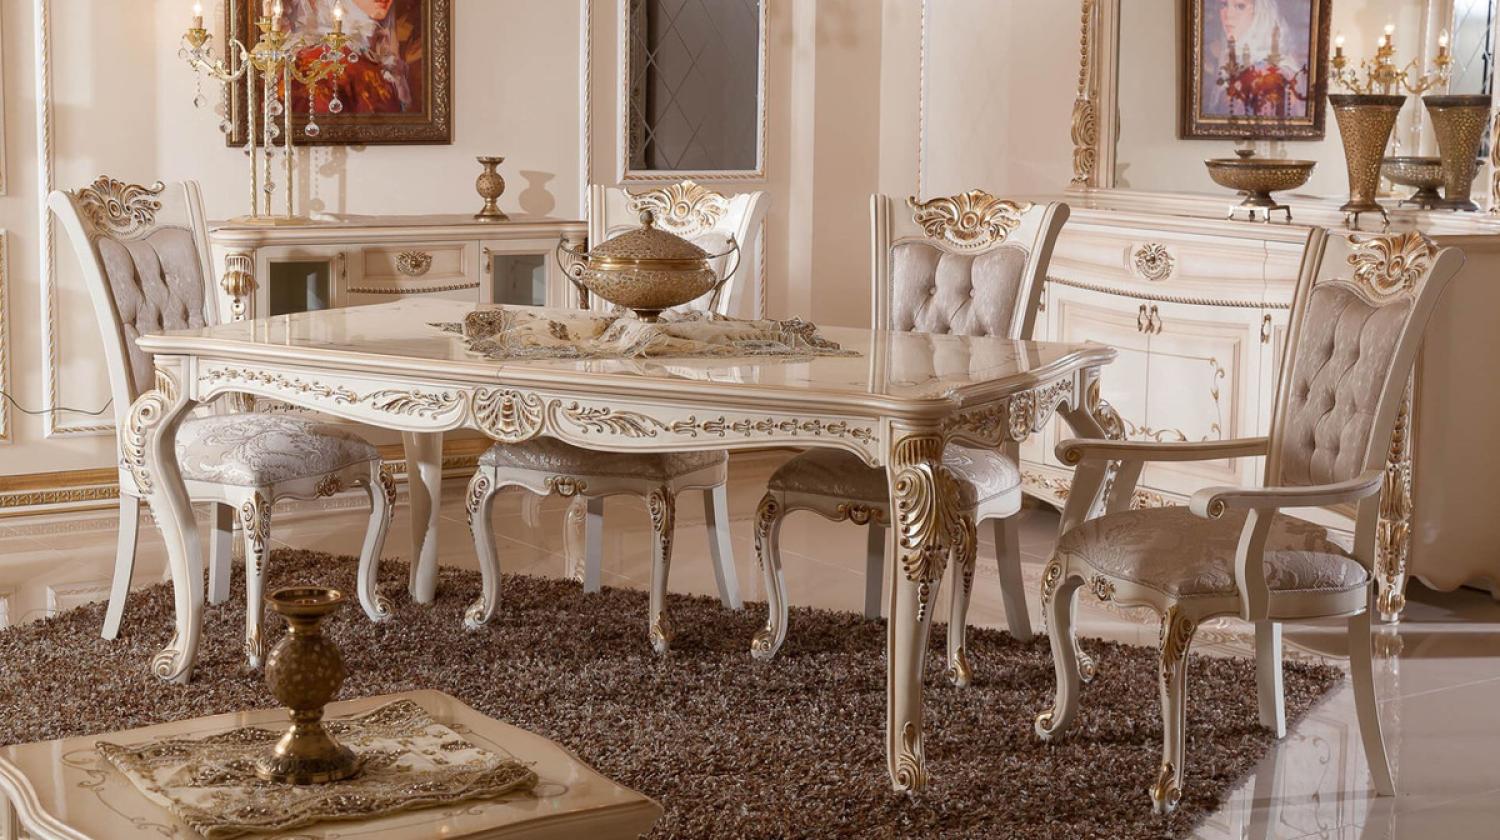 Casa Padrino Luxus Barock Esszimmer Set Grau / Weiß / Beige / Gold - 1 Barock Esstisch & 6 Barock Esszimmerstühle - Luxus Esszimmer Möbel im Barockstil - Prunkvolle Barock Esszimmer Möbel Bild 1